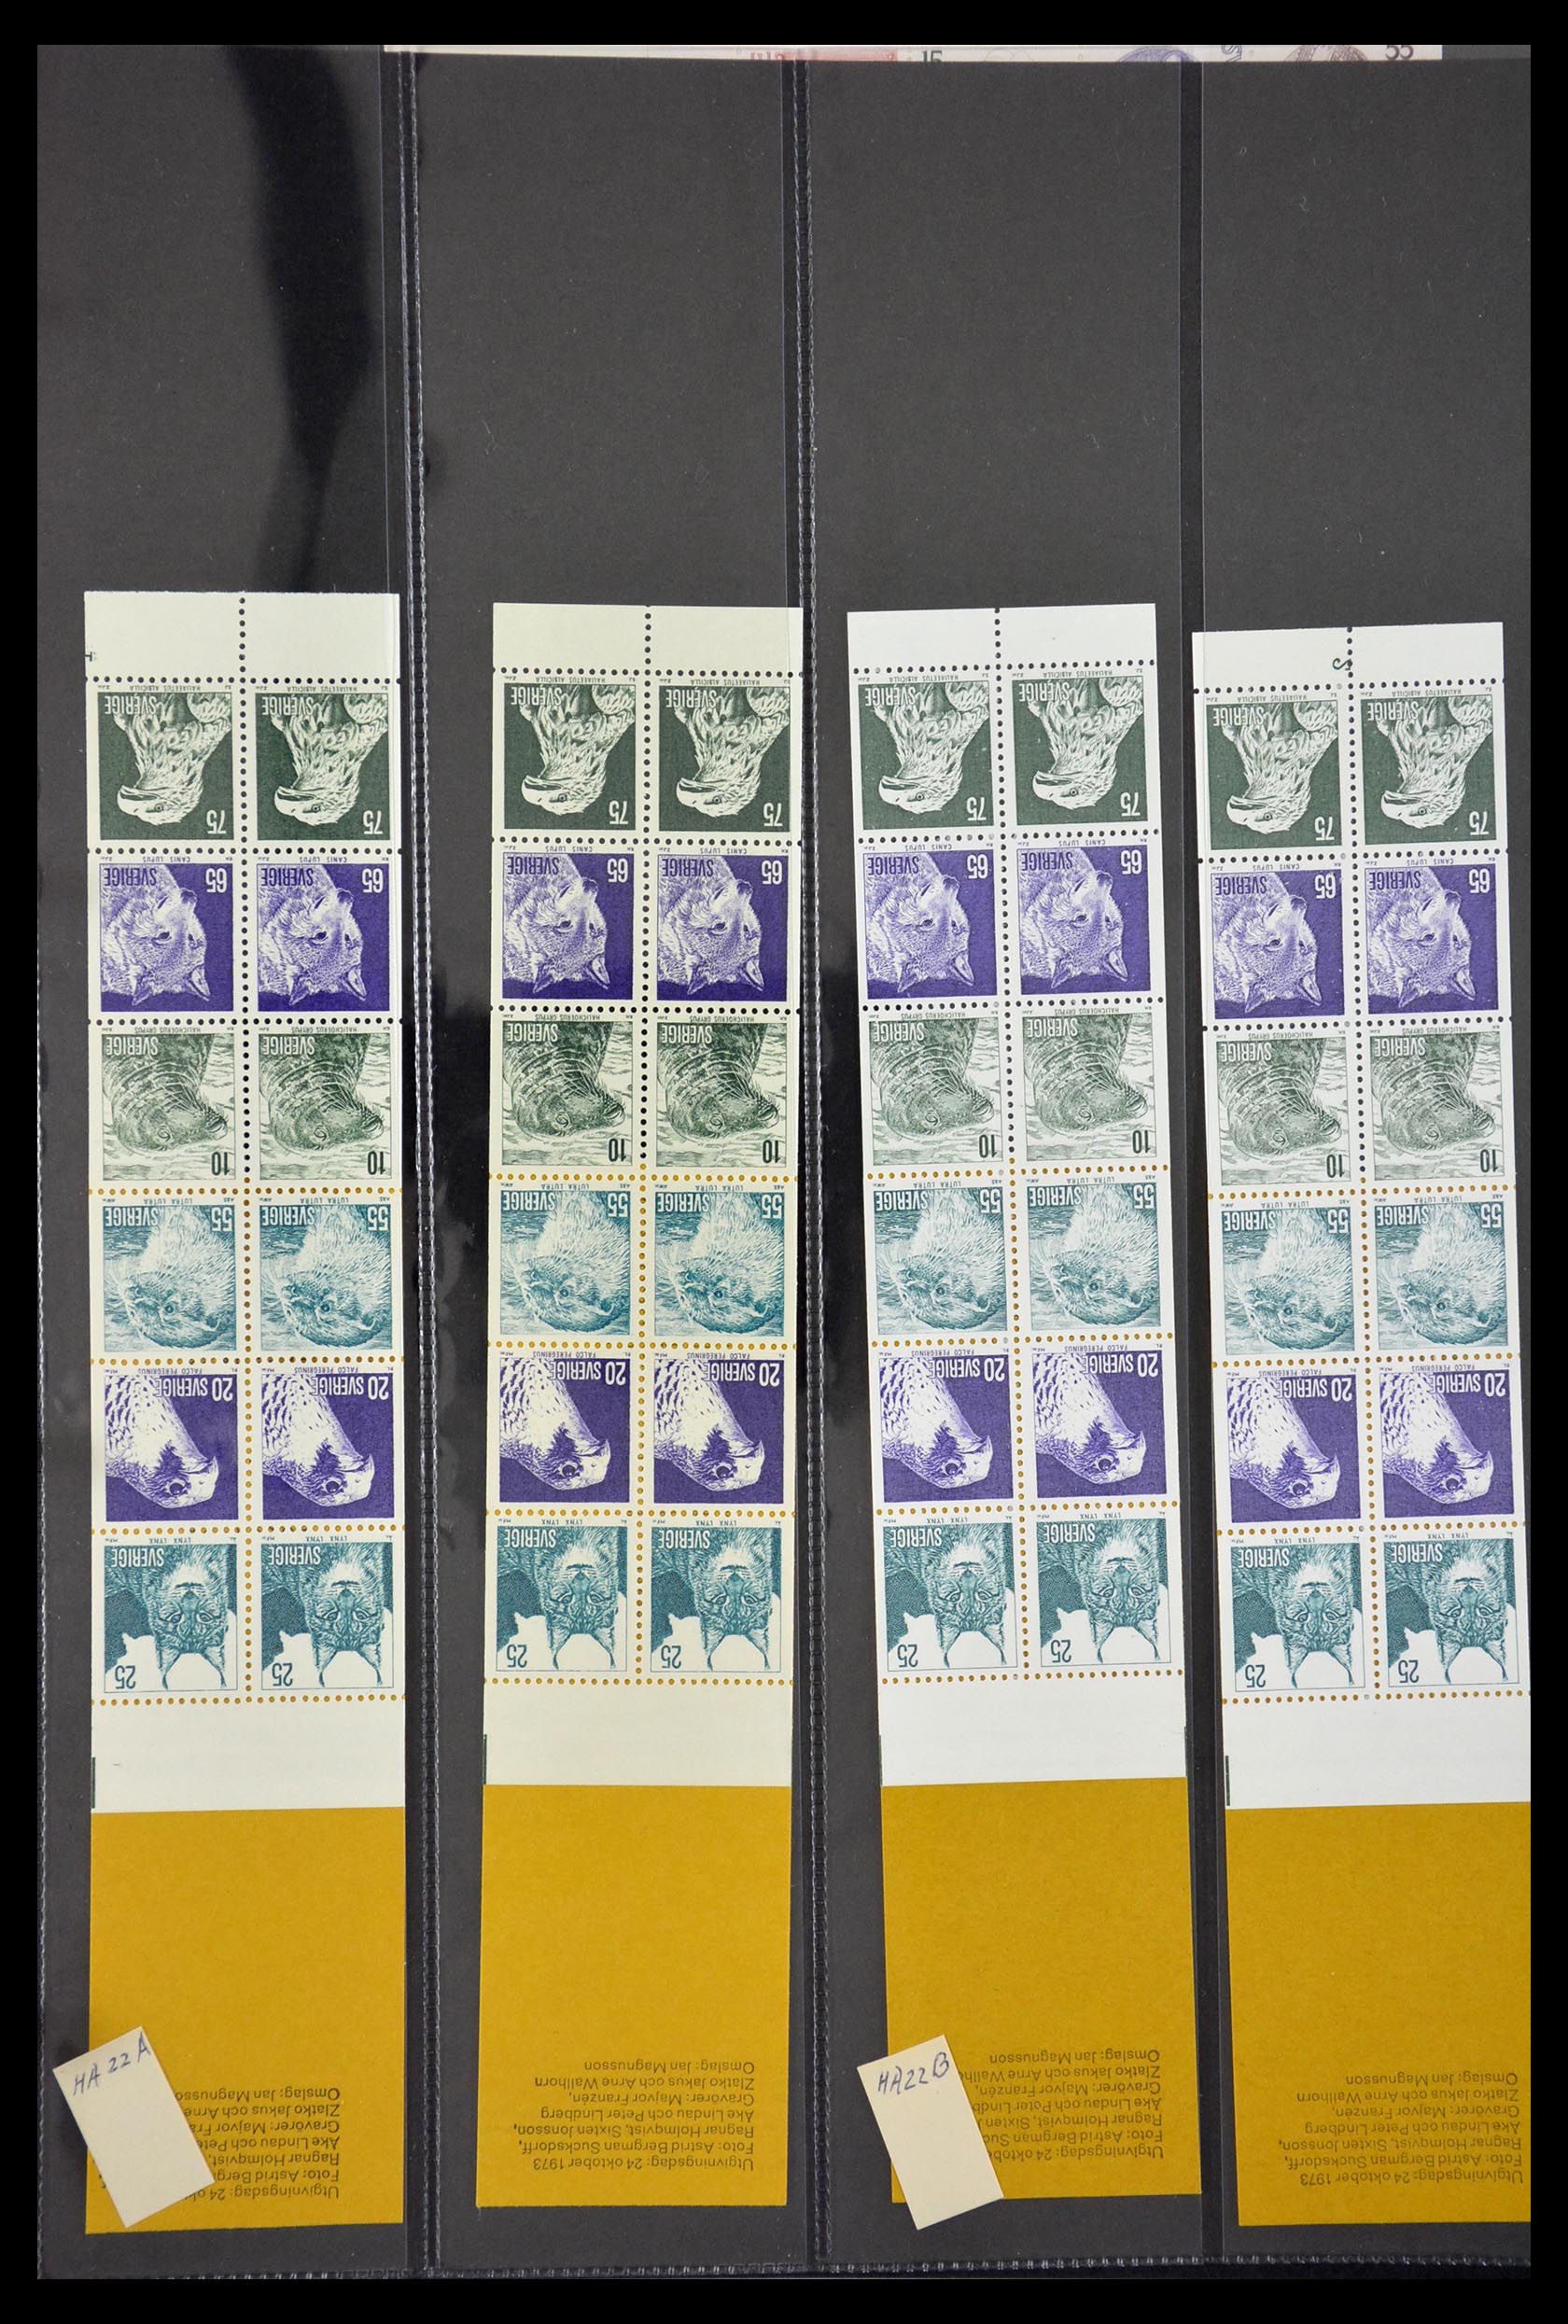 29368 022 - 29368 Sweden stamp booklets 1942-1996.